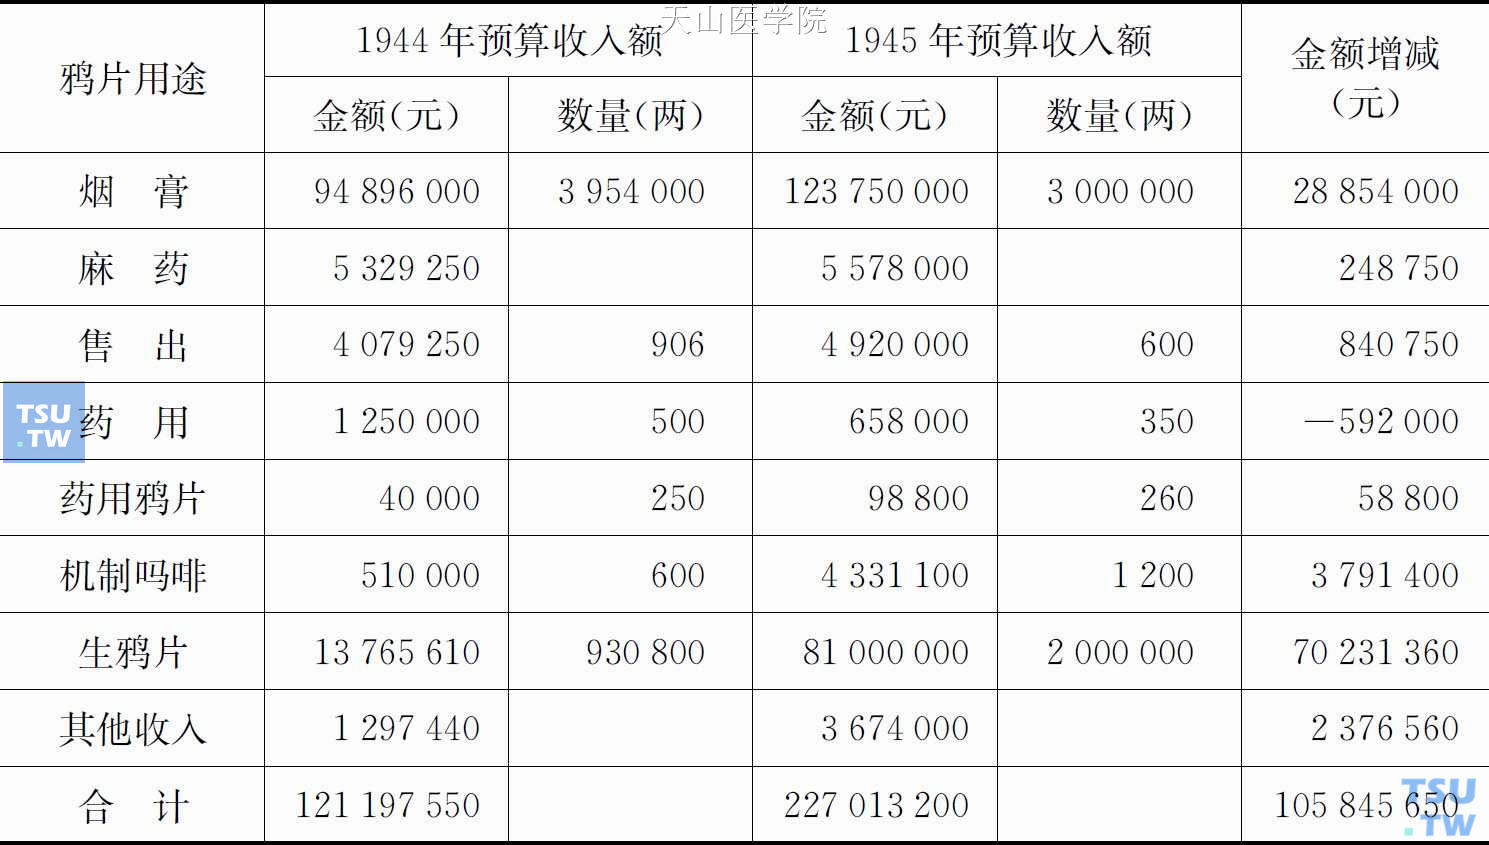 伪满洲国1944年与1945年鸦片预算收入额比较表